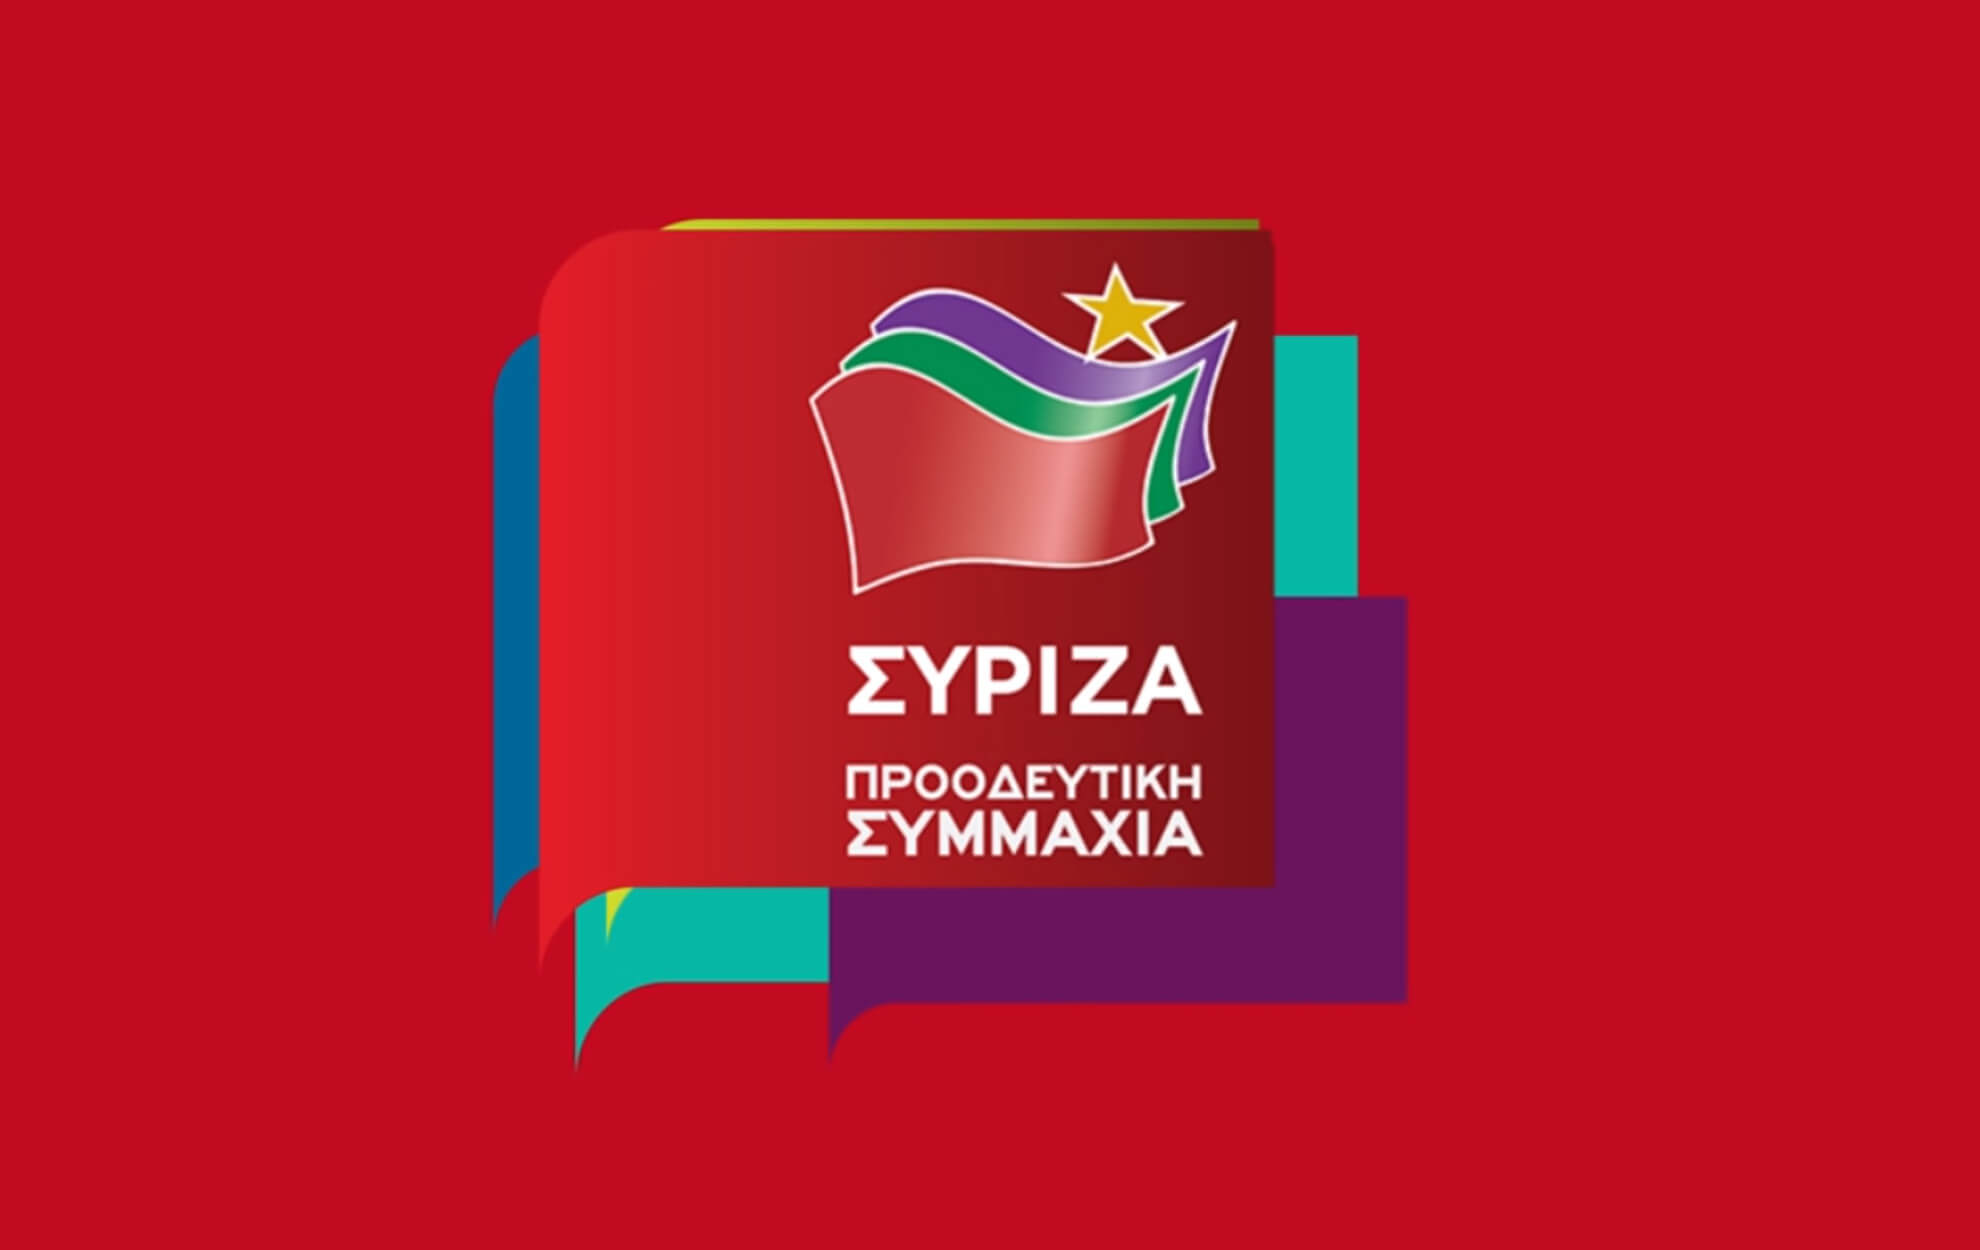 Ευρωεκλογές 2019: Νέο σποτ του ΣΥΡΙΖΑ με όλες τις “θερμές” υποδοχές Τσίπρα ανά την Ελλάδα – video